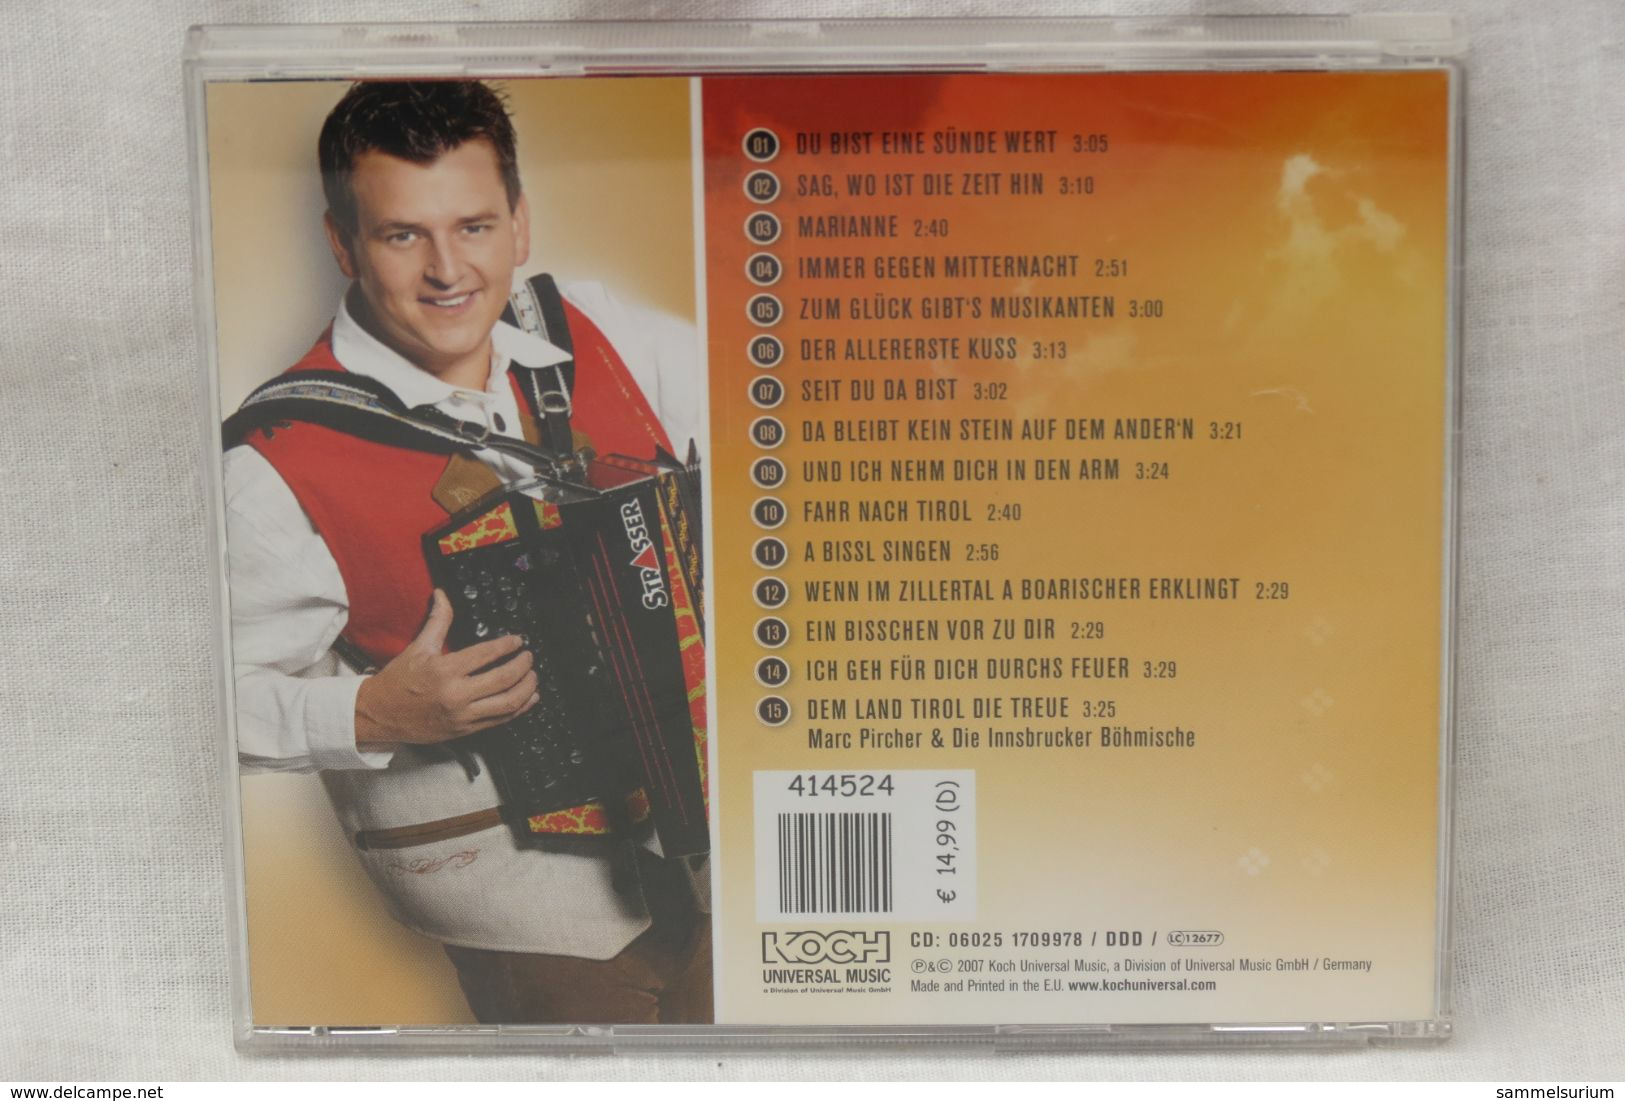 CD "Marc Pircher" Du Bist Eine Sünde Wert - Other - German Music